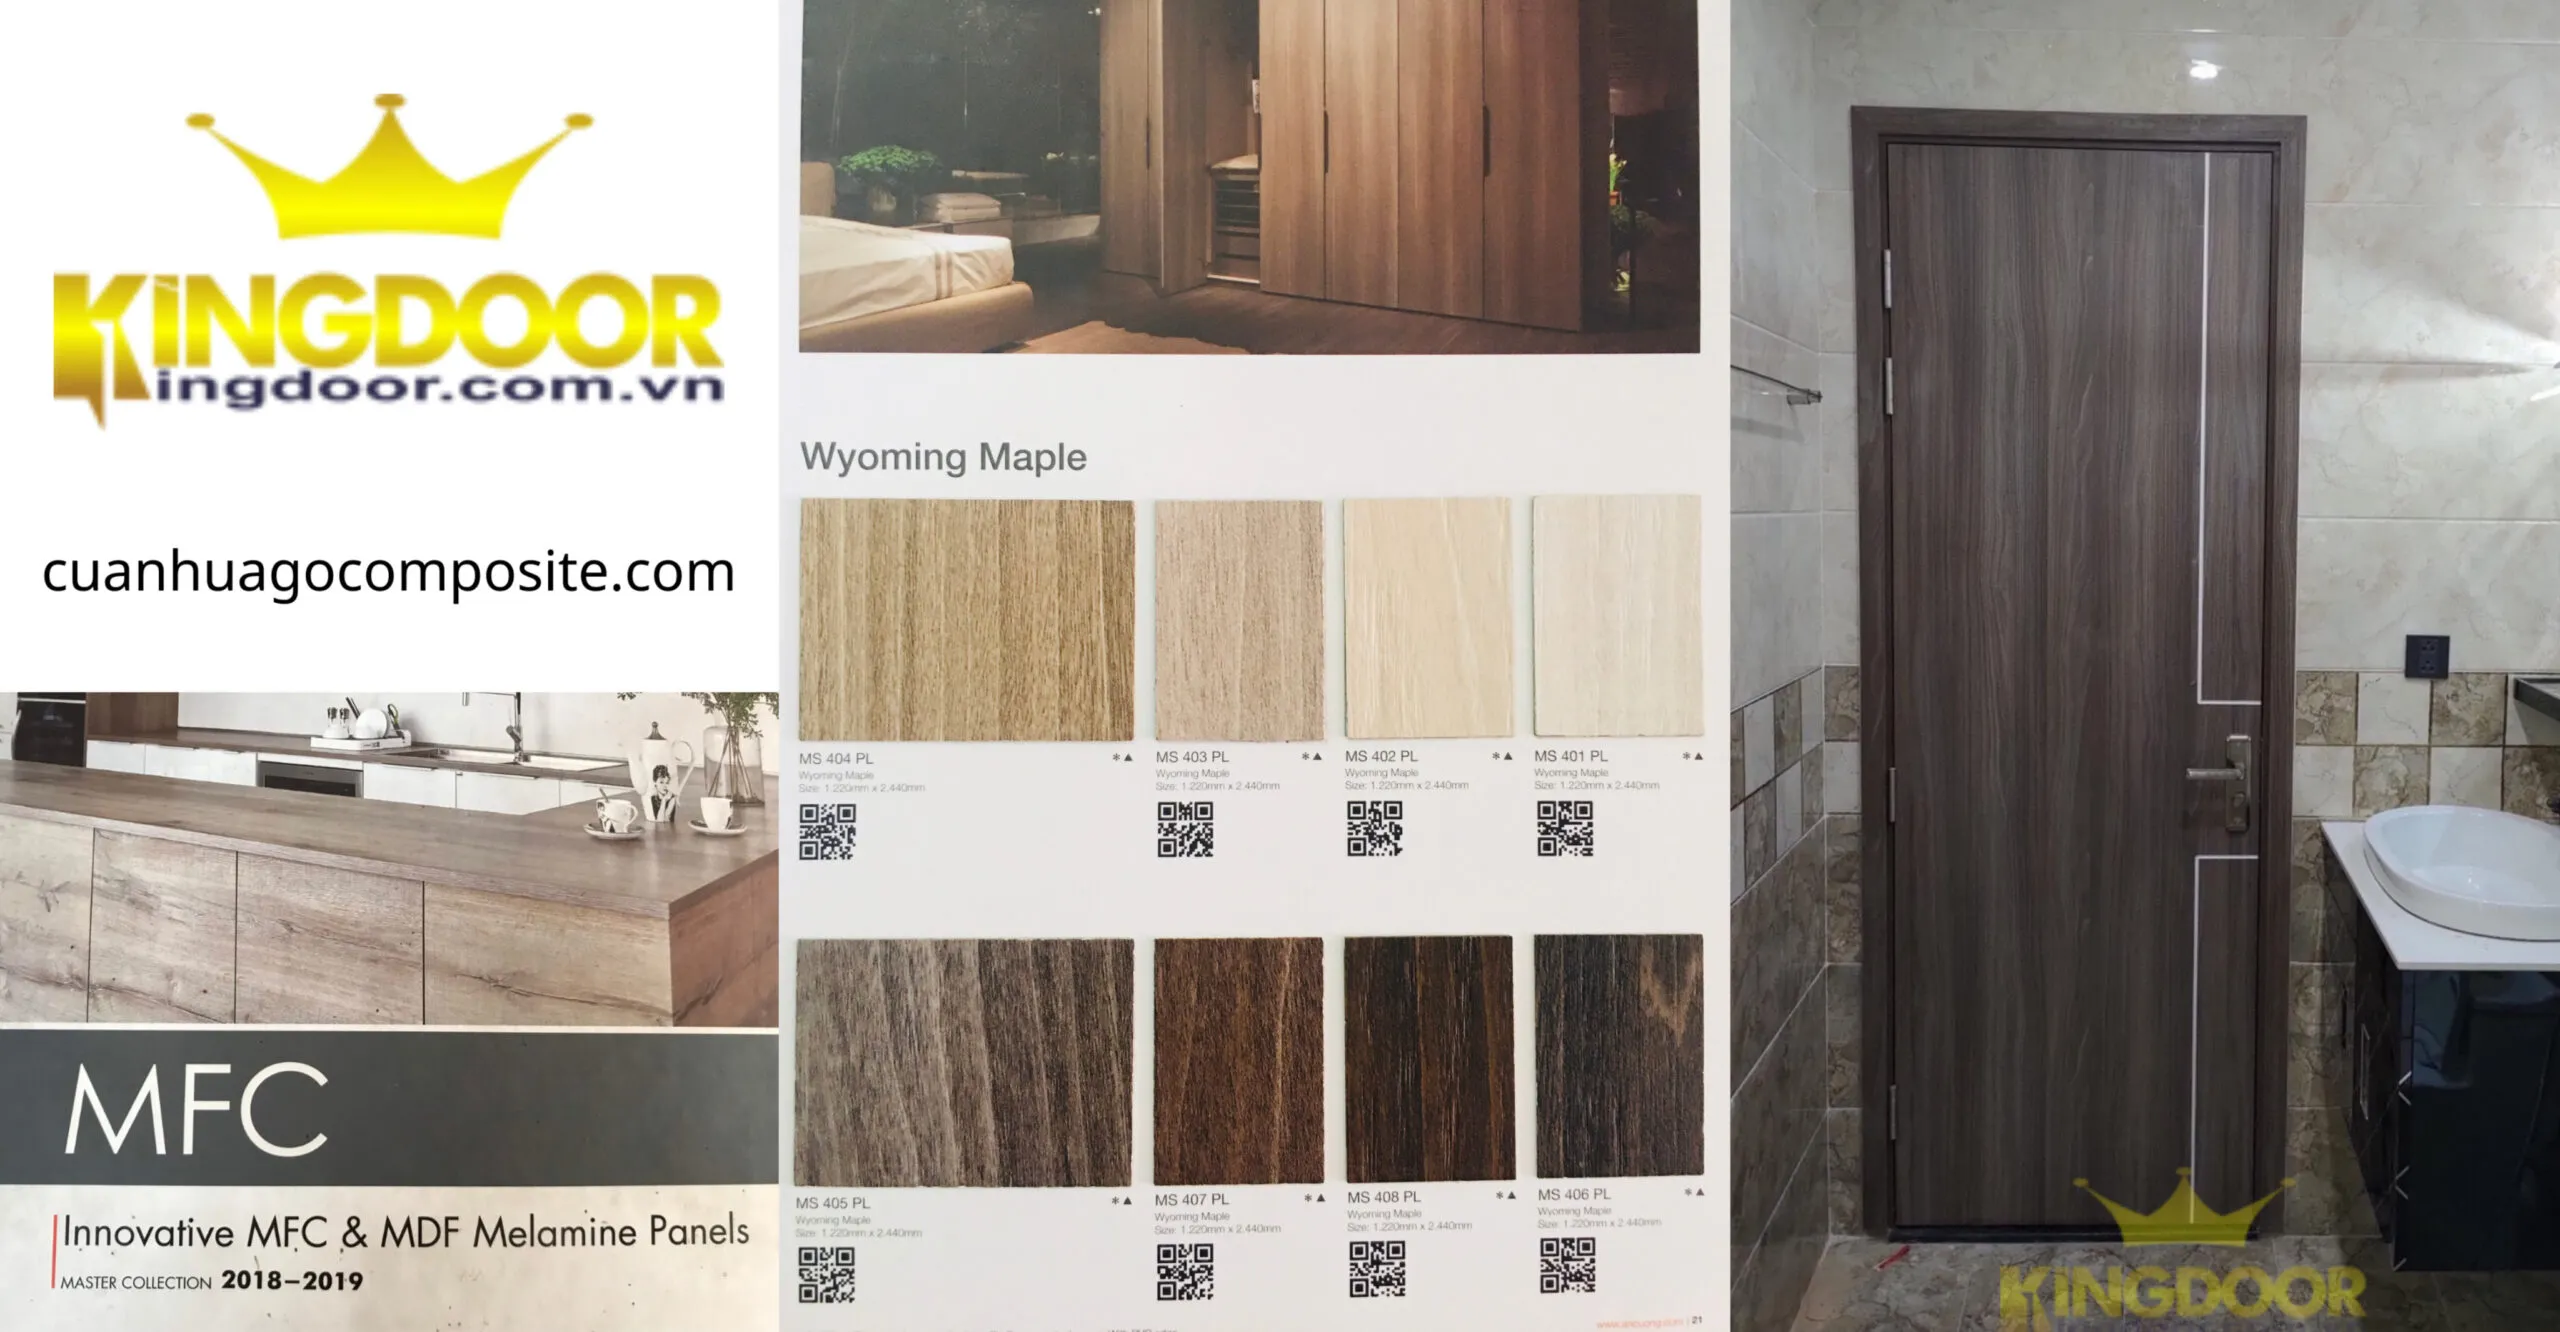 Mẫu cửa gỗ công nghiệp MDF Melamine - Cửa gỗ phòng ngủ giá rẻ.